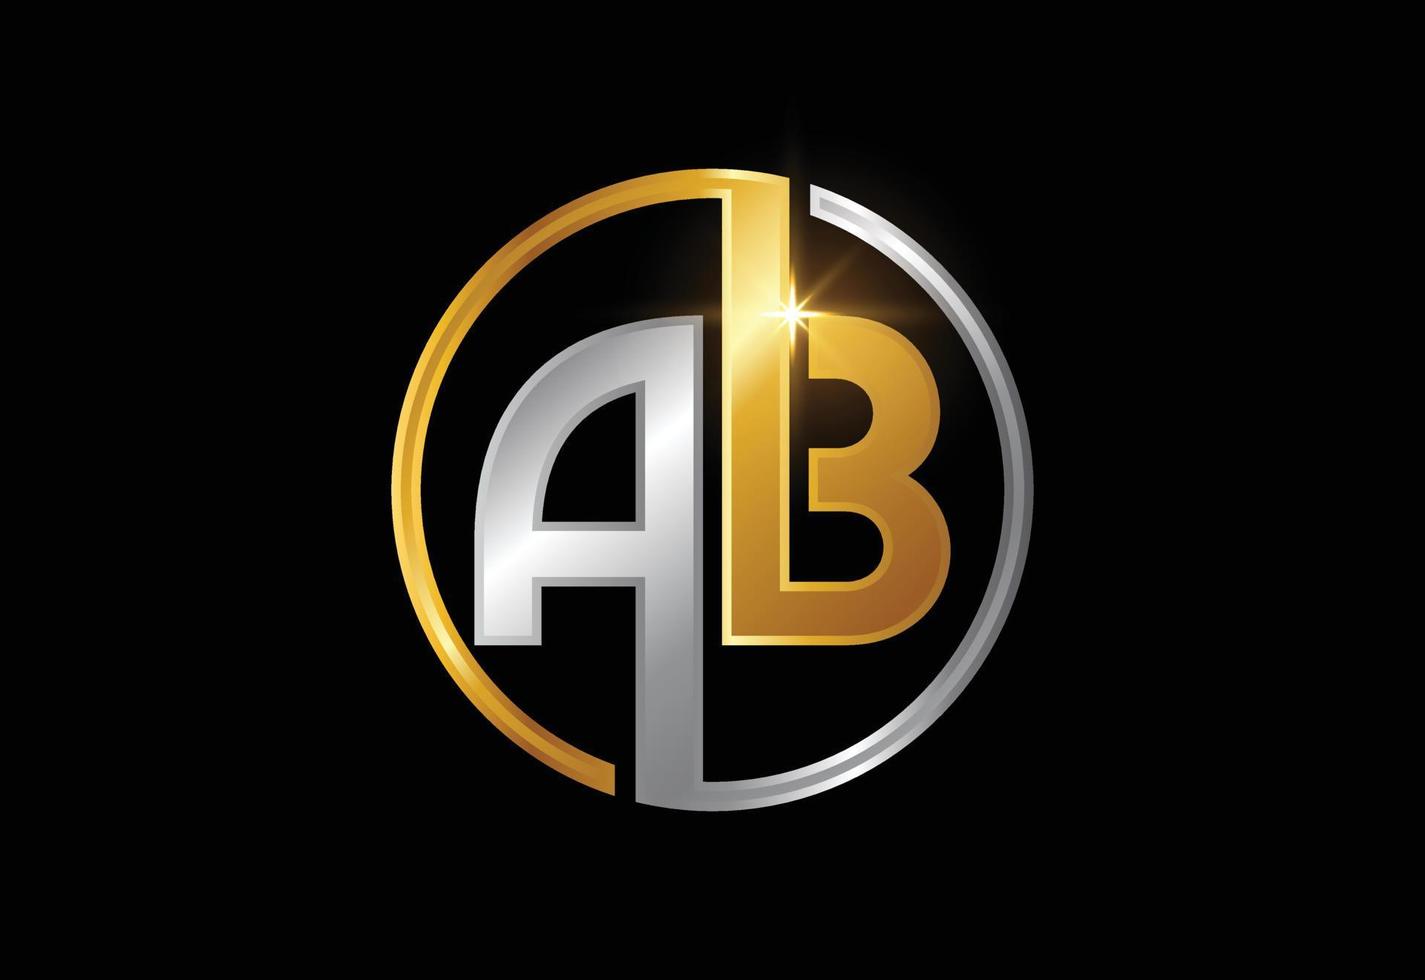 eerste monogram brief ab logo vector ontwerpsjabloon. grafisch alfabetsymbool voor bedrijfsidentiteit